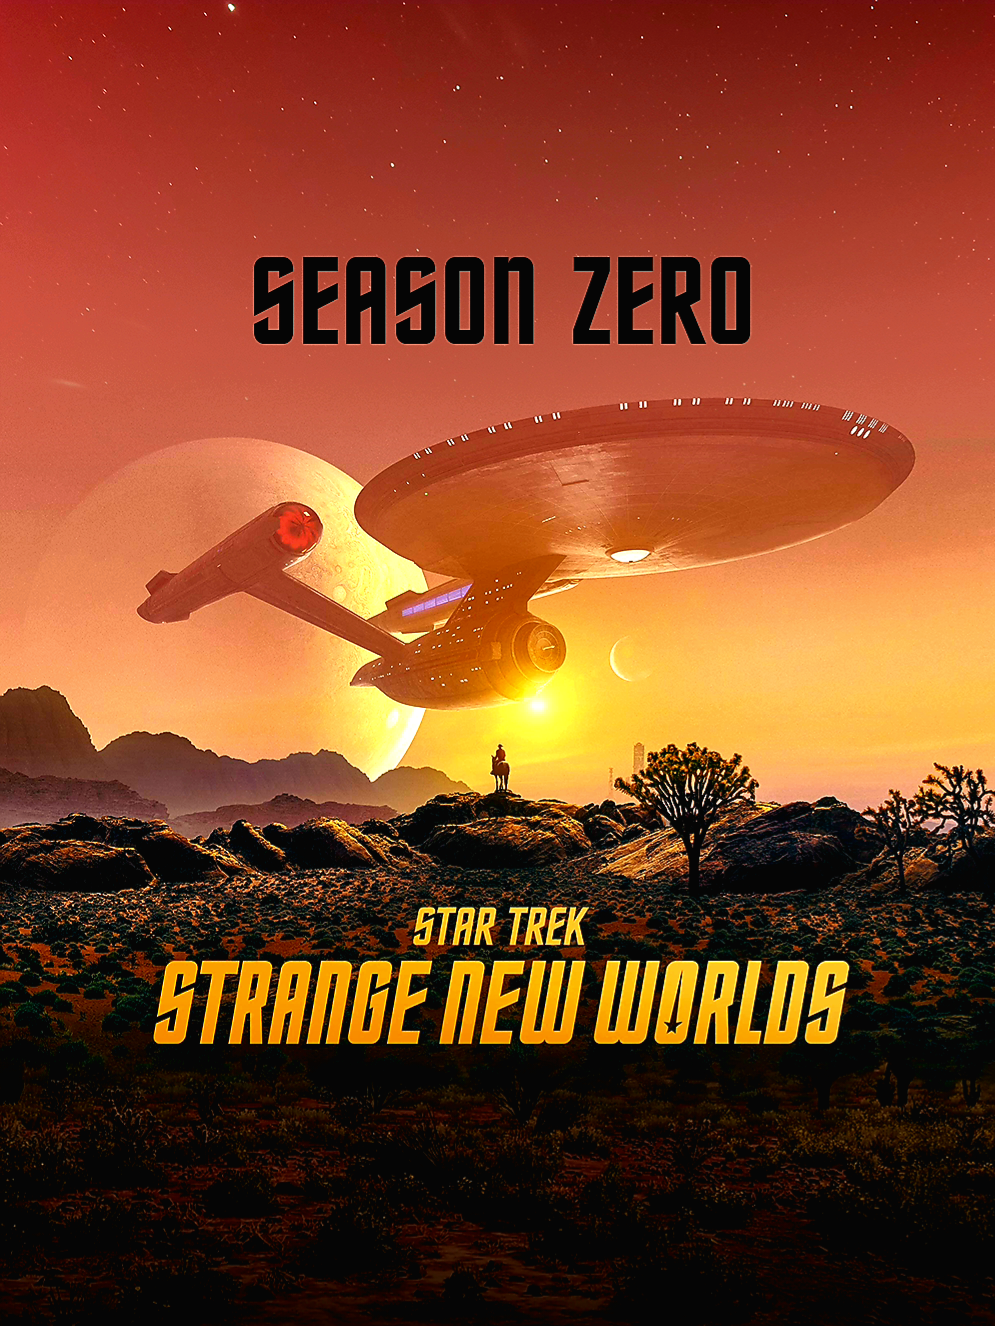 Star Trek Strange New Worlds Season Zero Poster.png